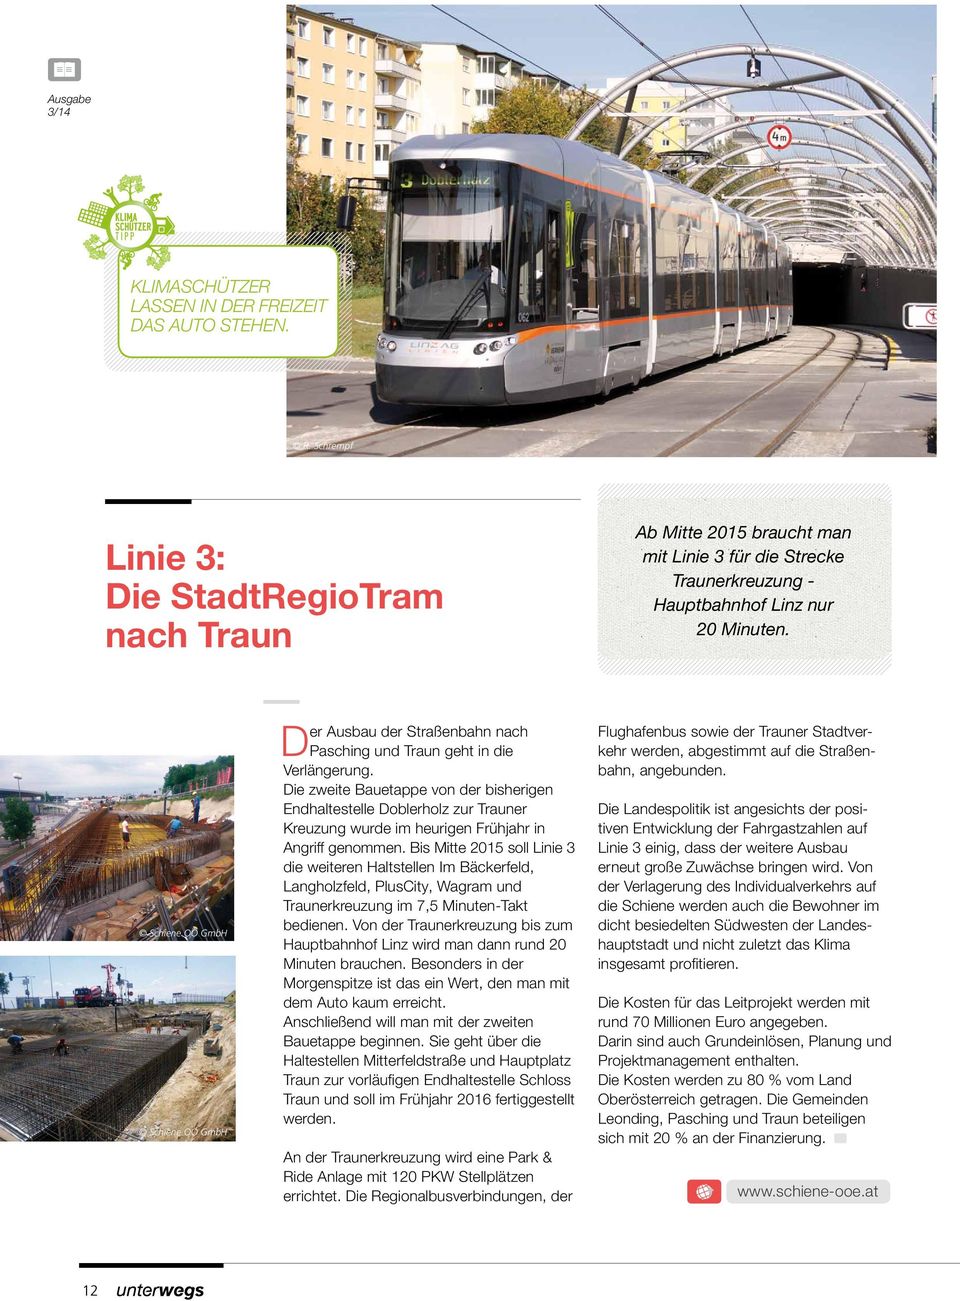 Schiene OÖ GmbH Schiene OÖ GmbH Der Ausbau der Straßenbahn nach Pasching und Traun geht in die Verlängerung.